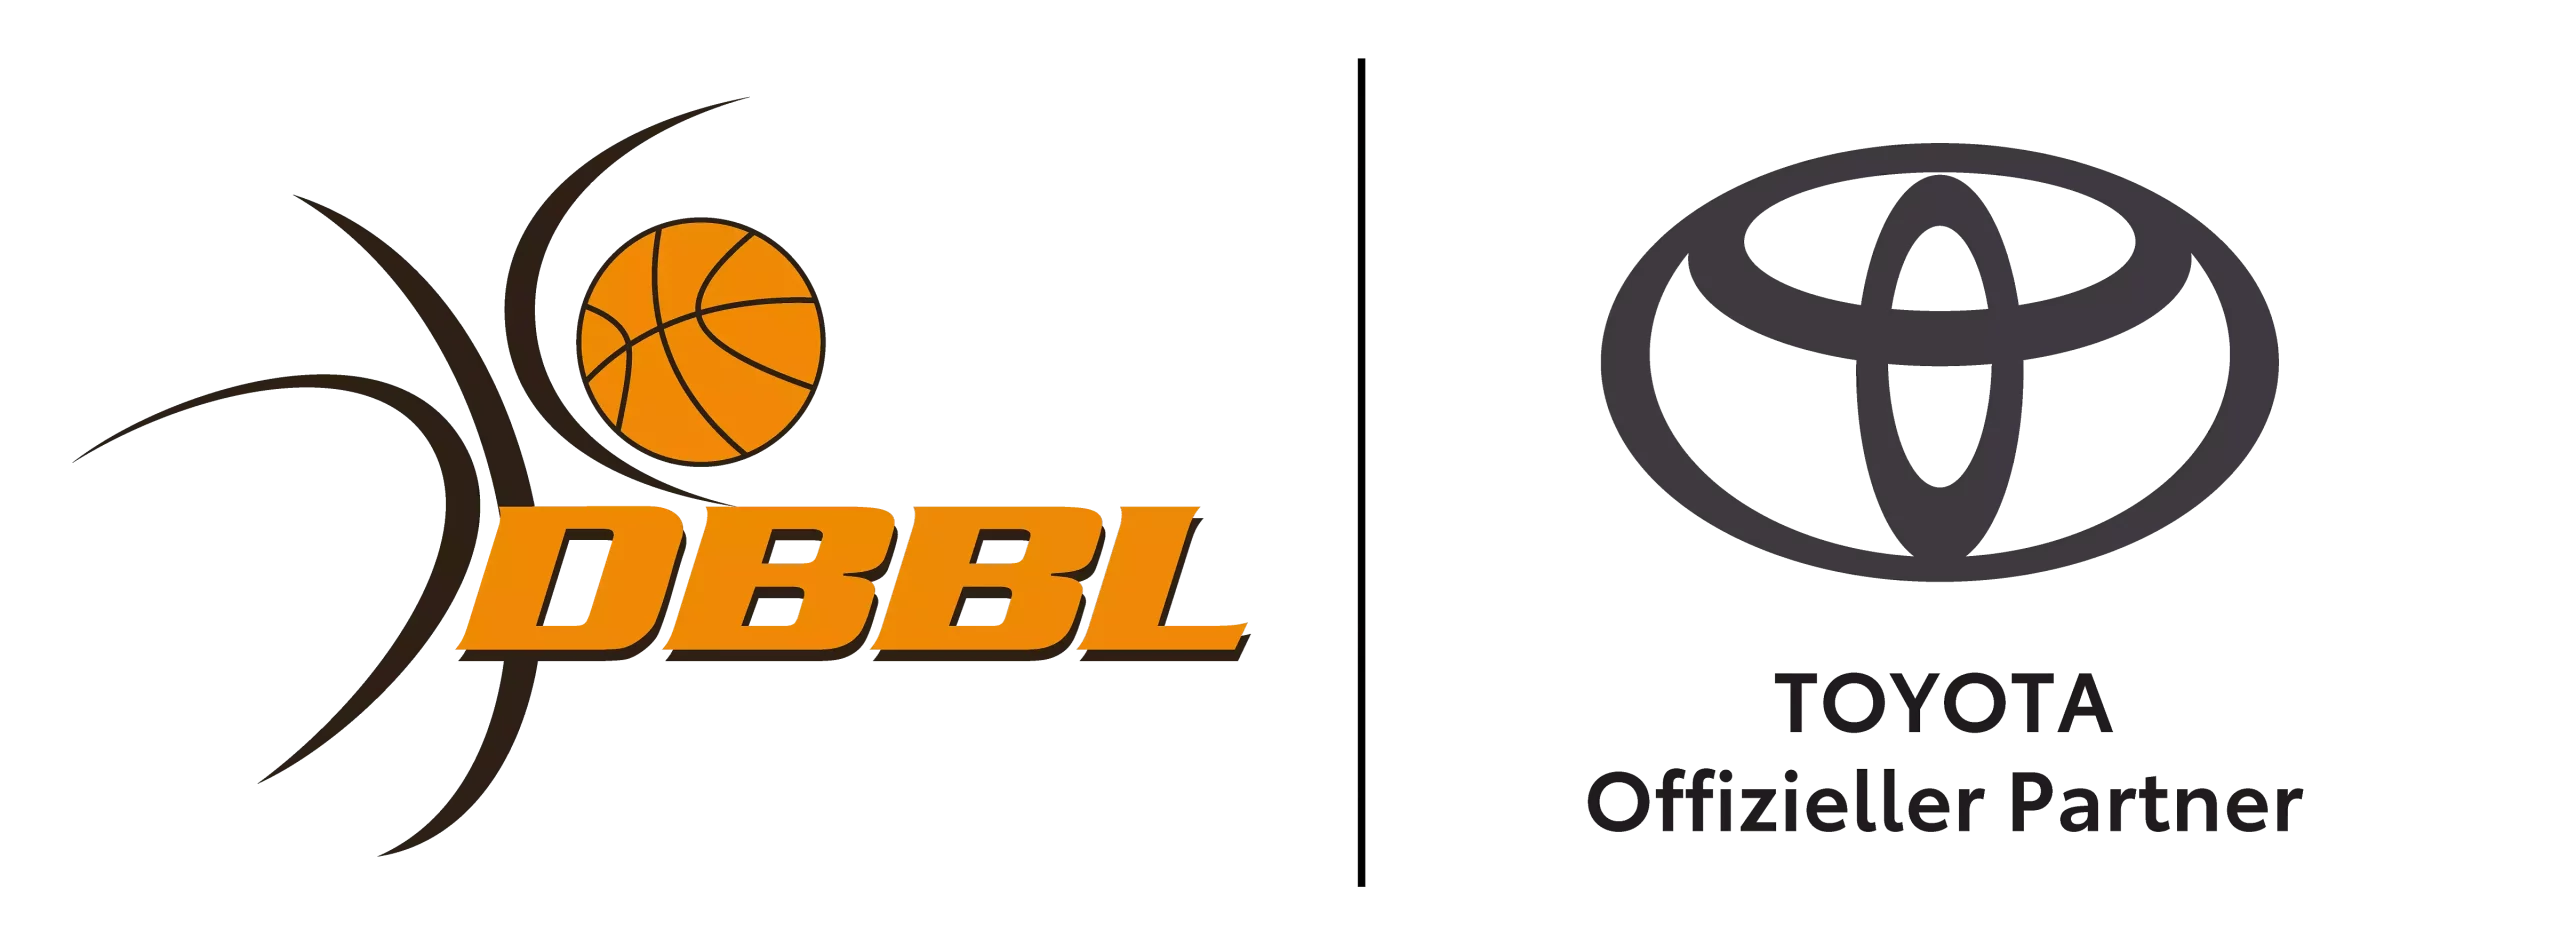 Das Logo von Toyota und der DBBL